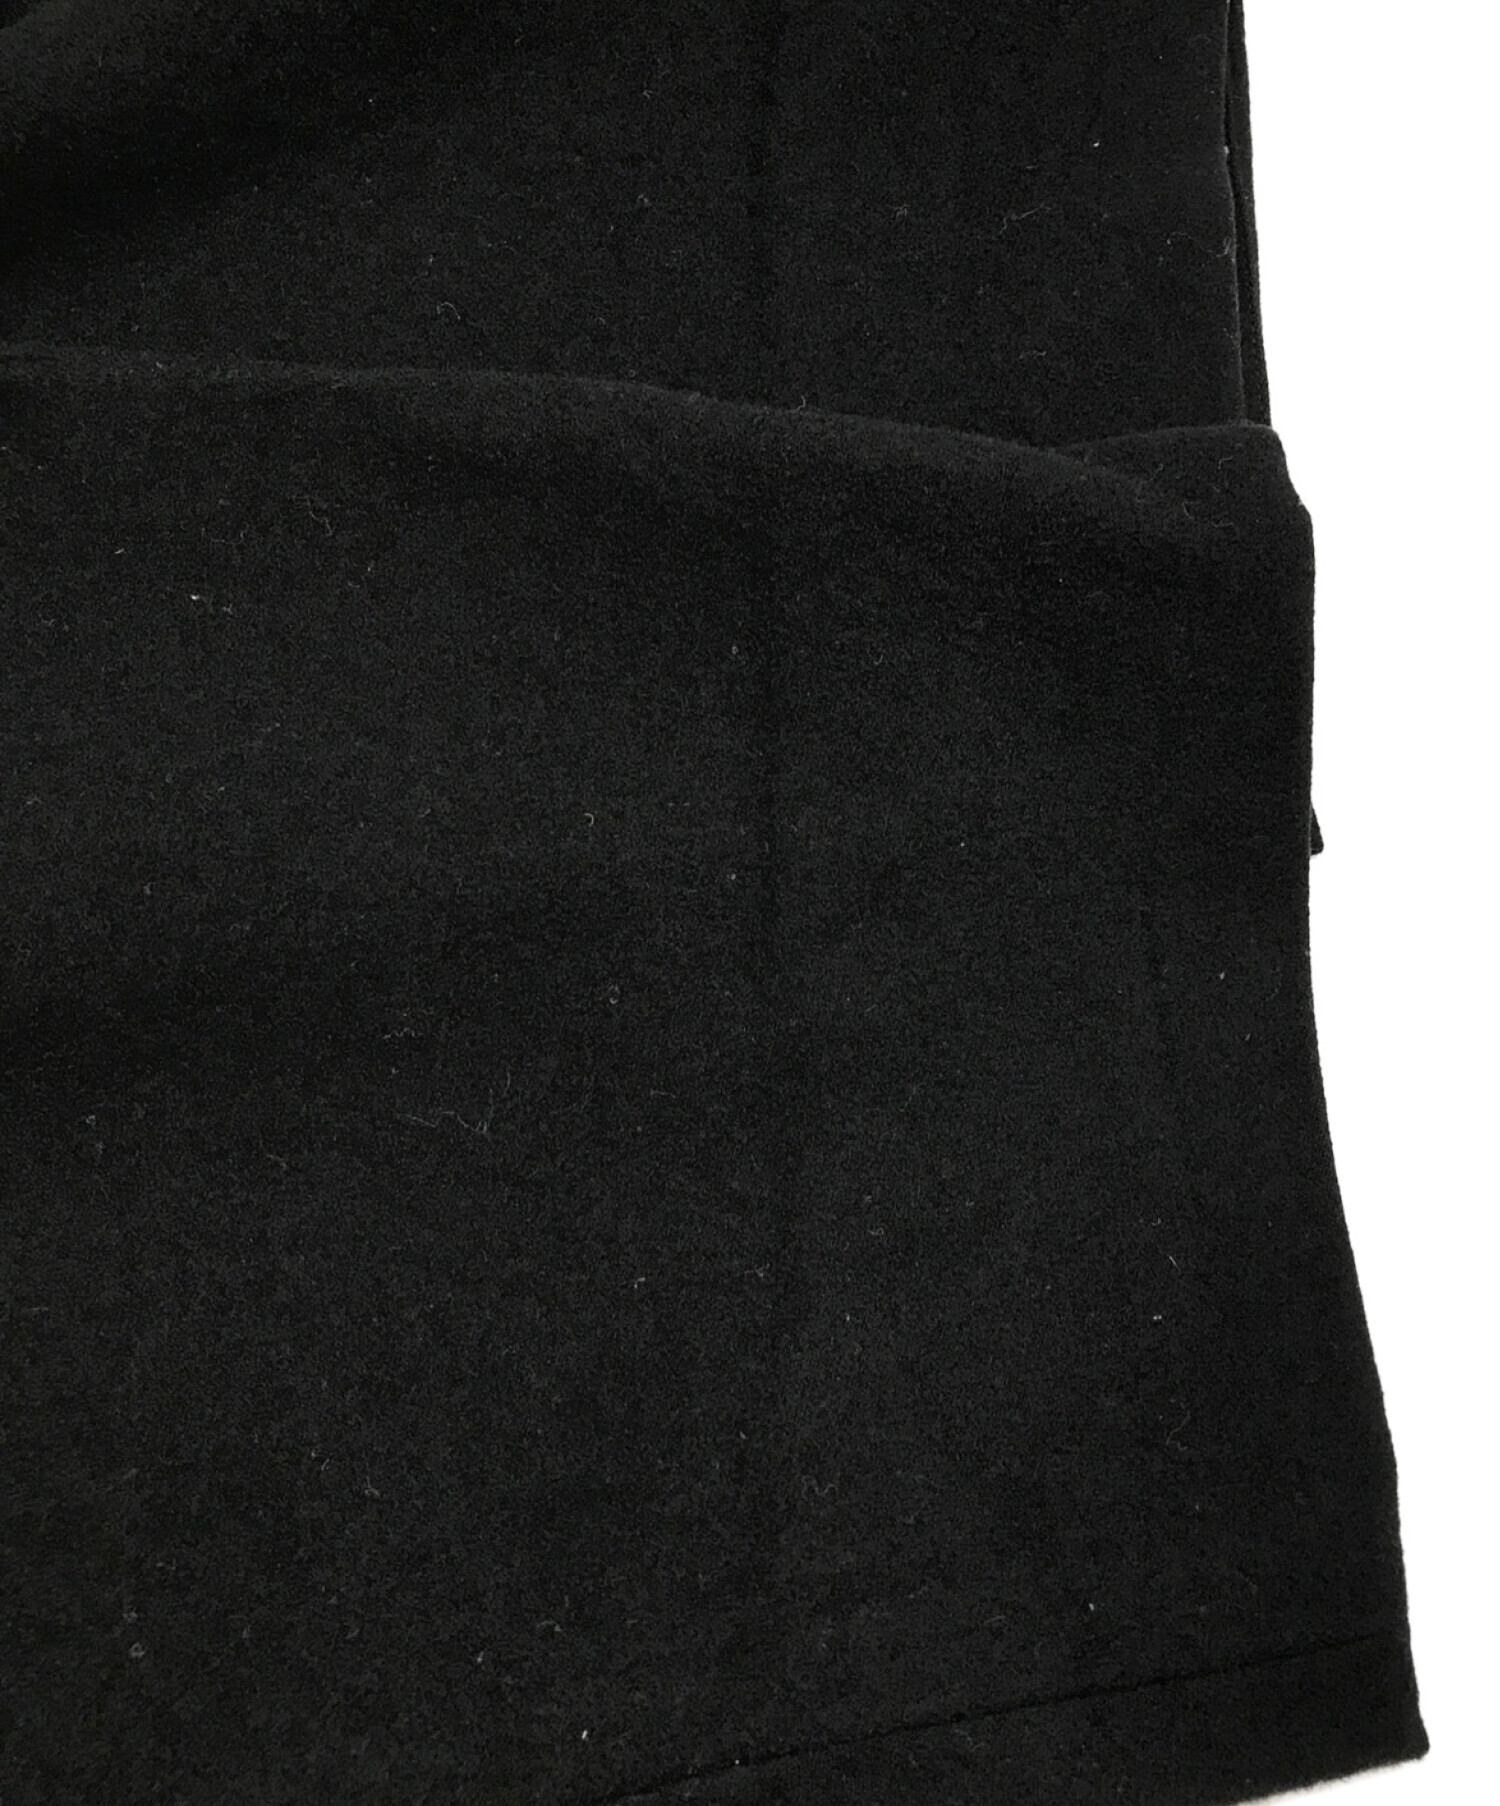 Yohji Yamamoto pour homme (ヨウジヤマモト プールオム) 2タックウールパンツ ブラック サイズ:M